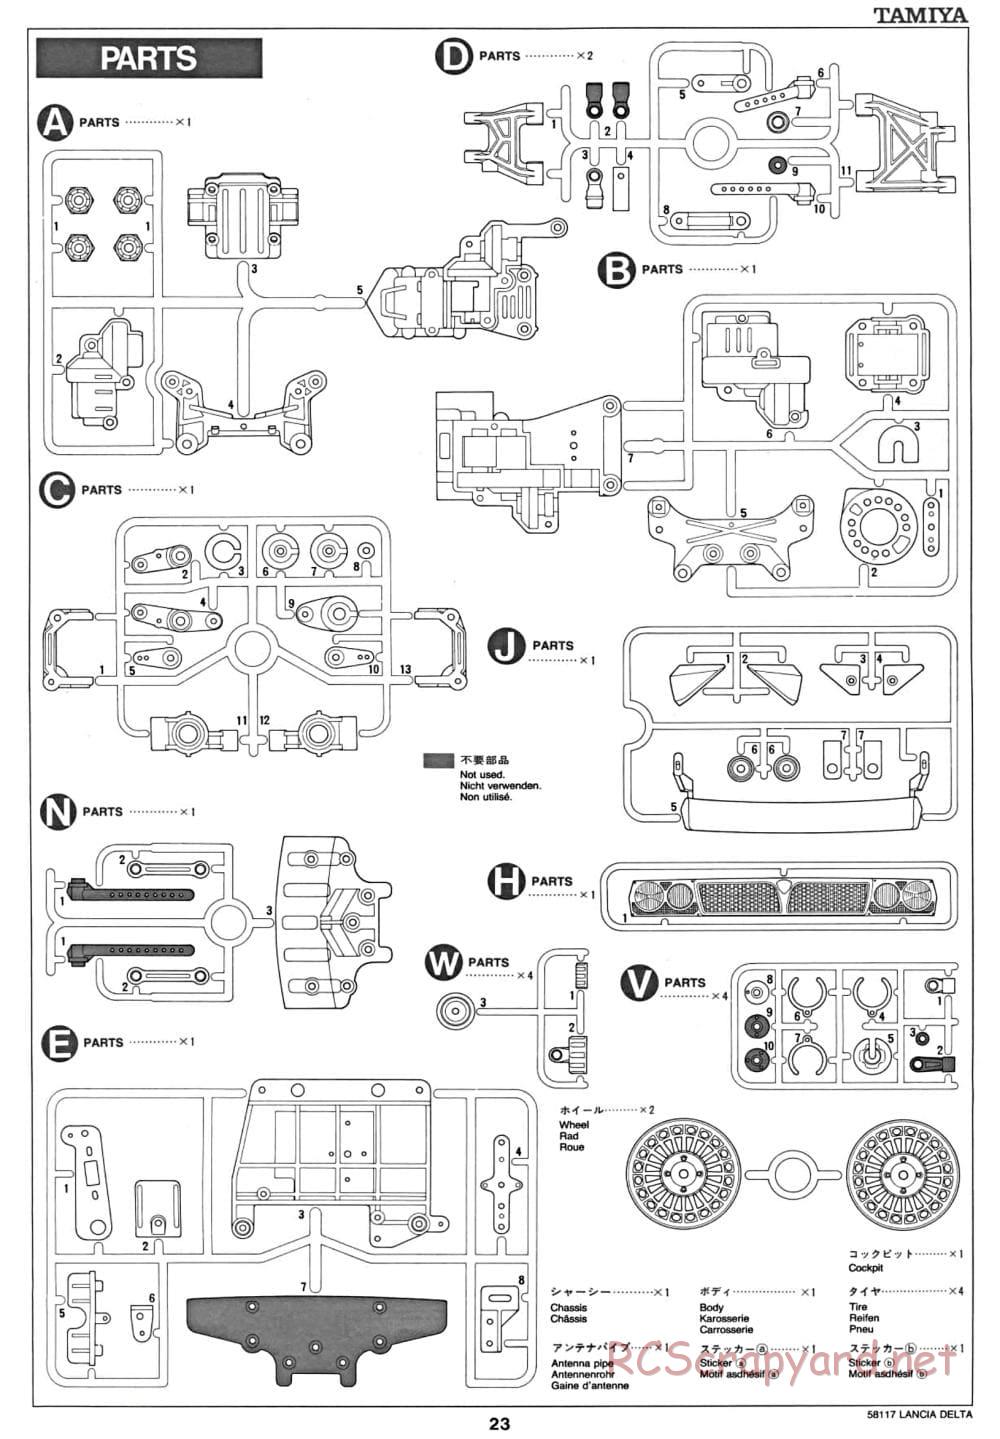 Tamiya - Lancia Delta HF Integrale - TA-01 Chassis - Manual - Page 24